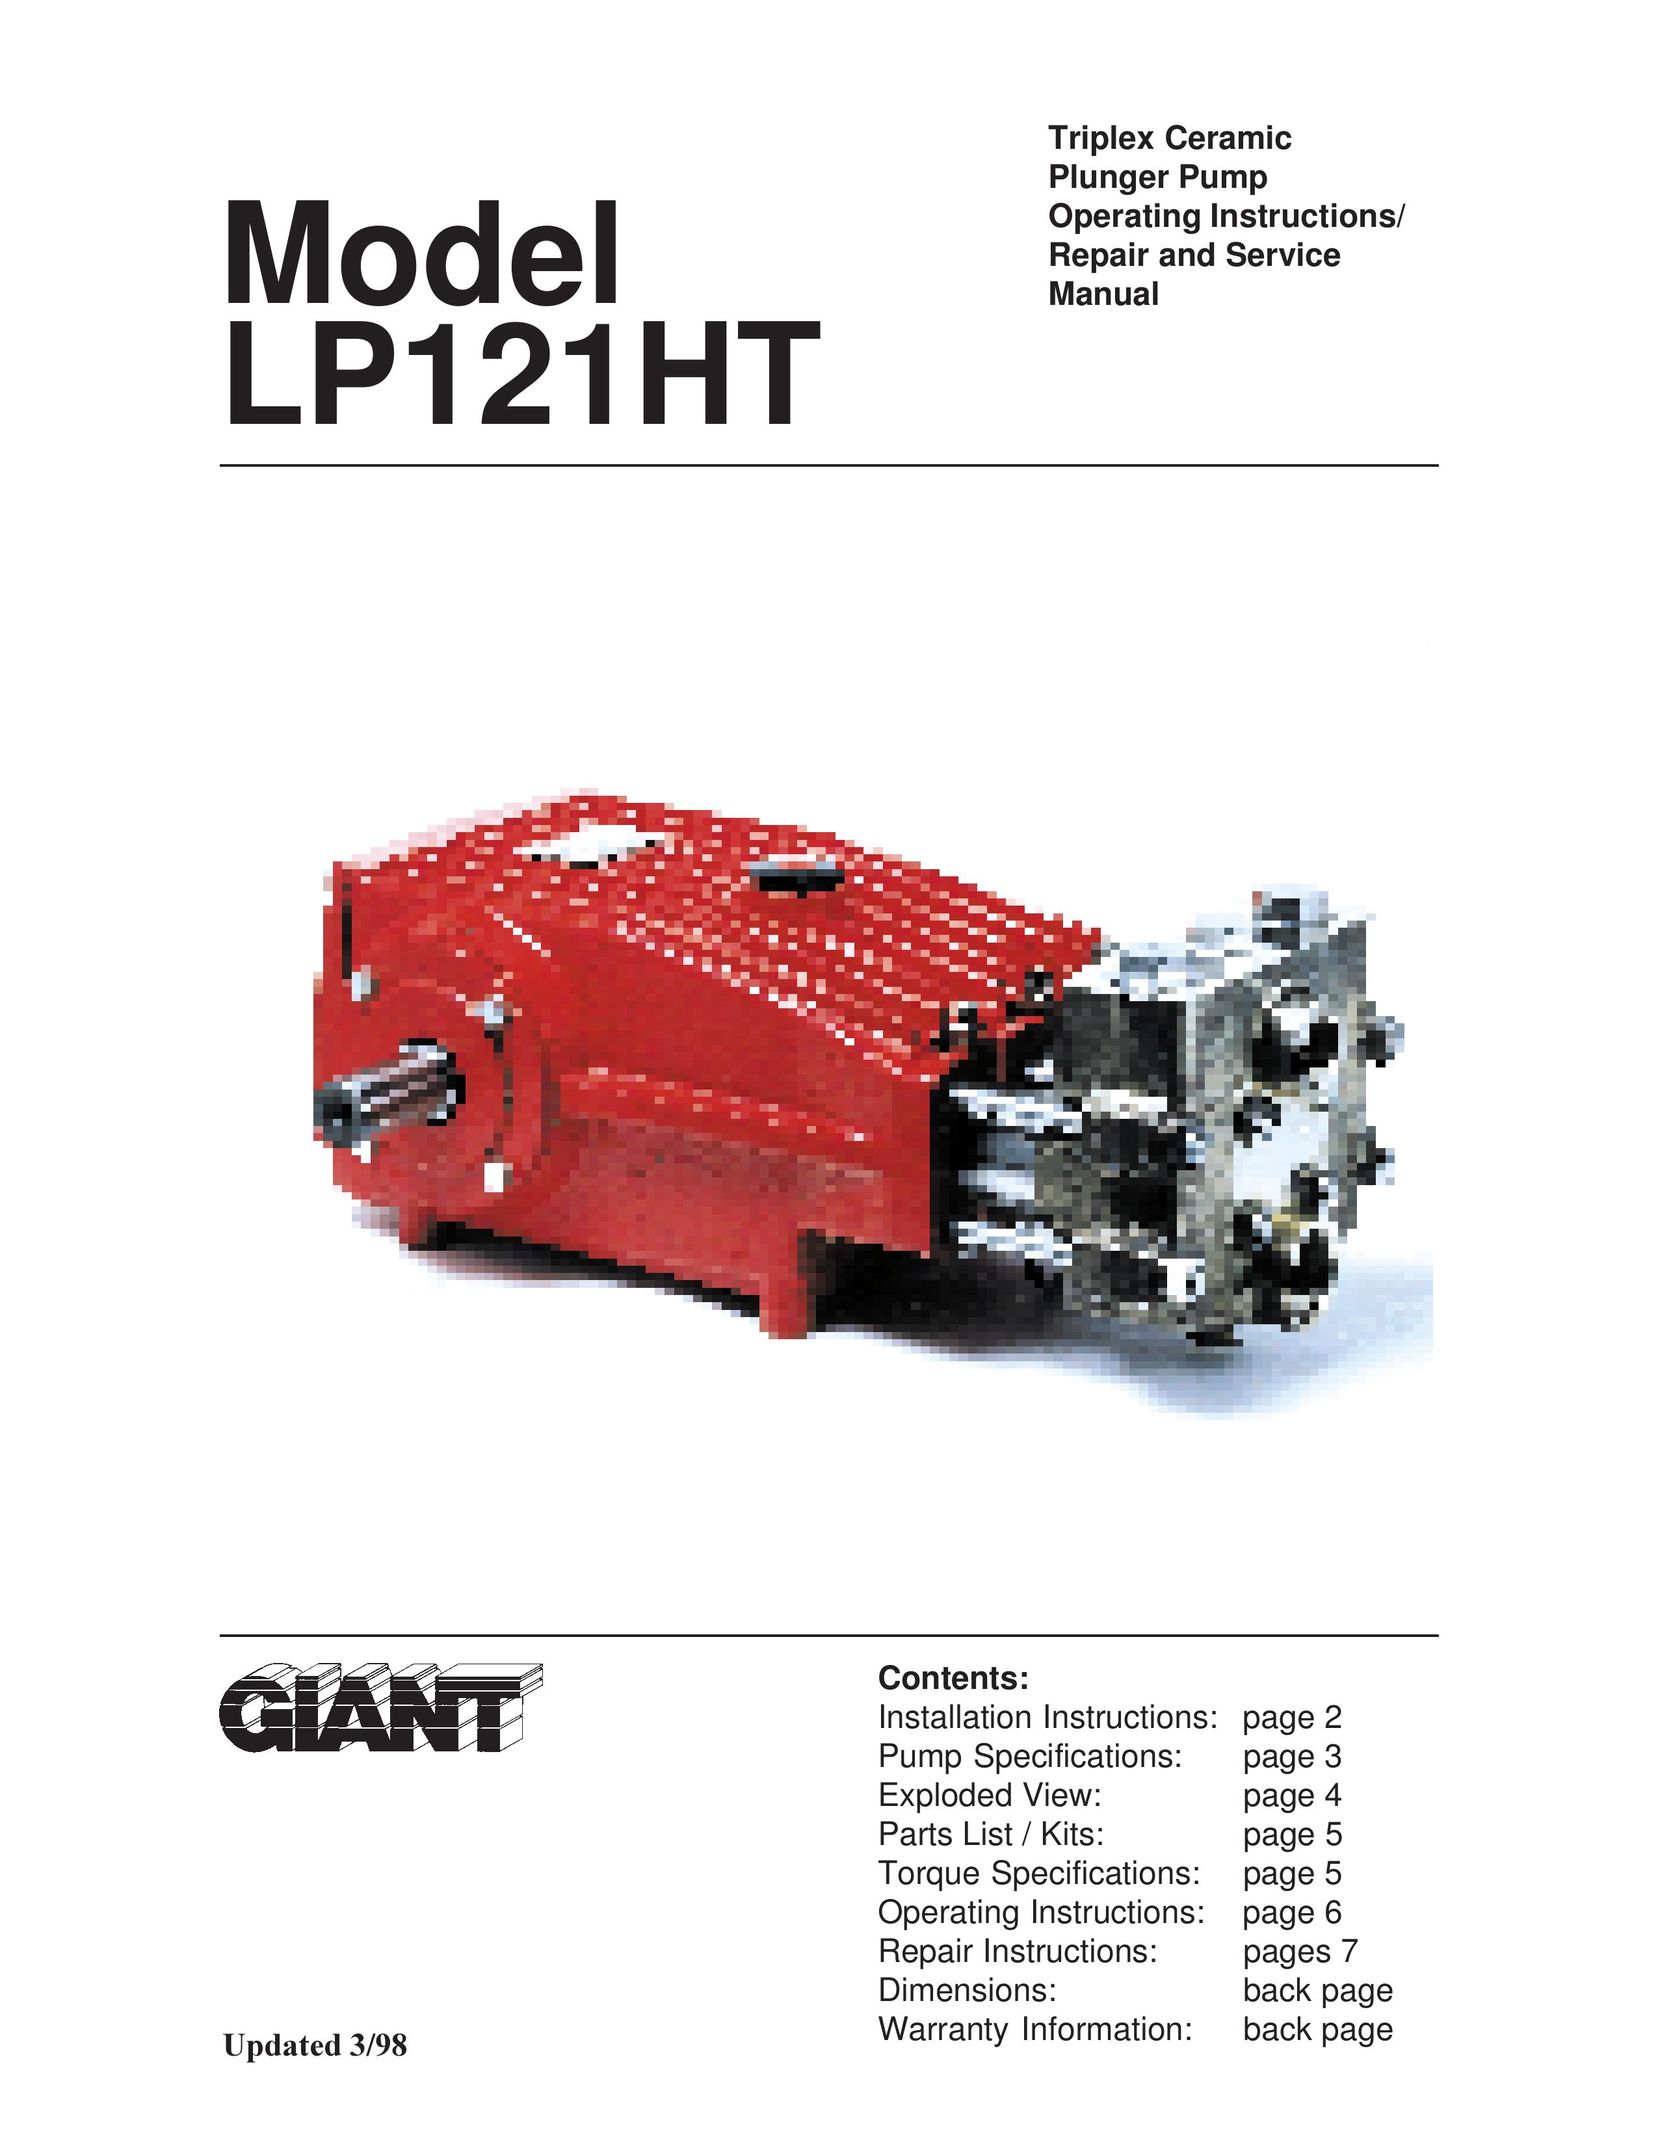 Giant LP121HT Water Pump User Manual